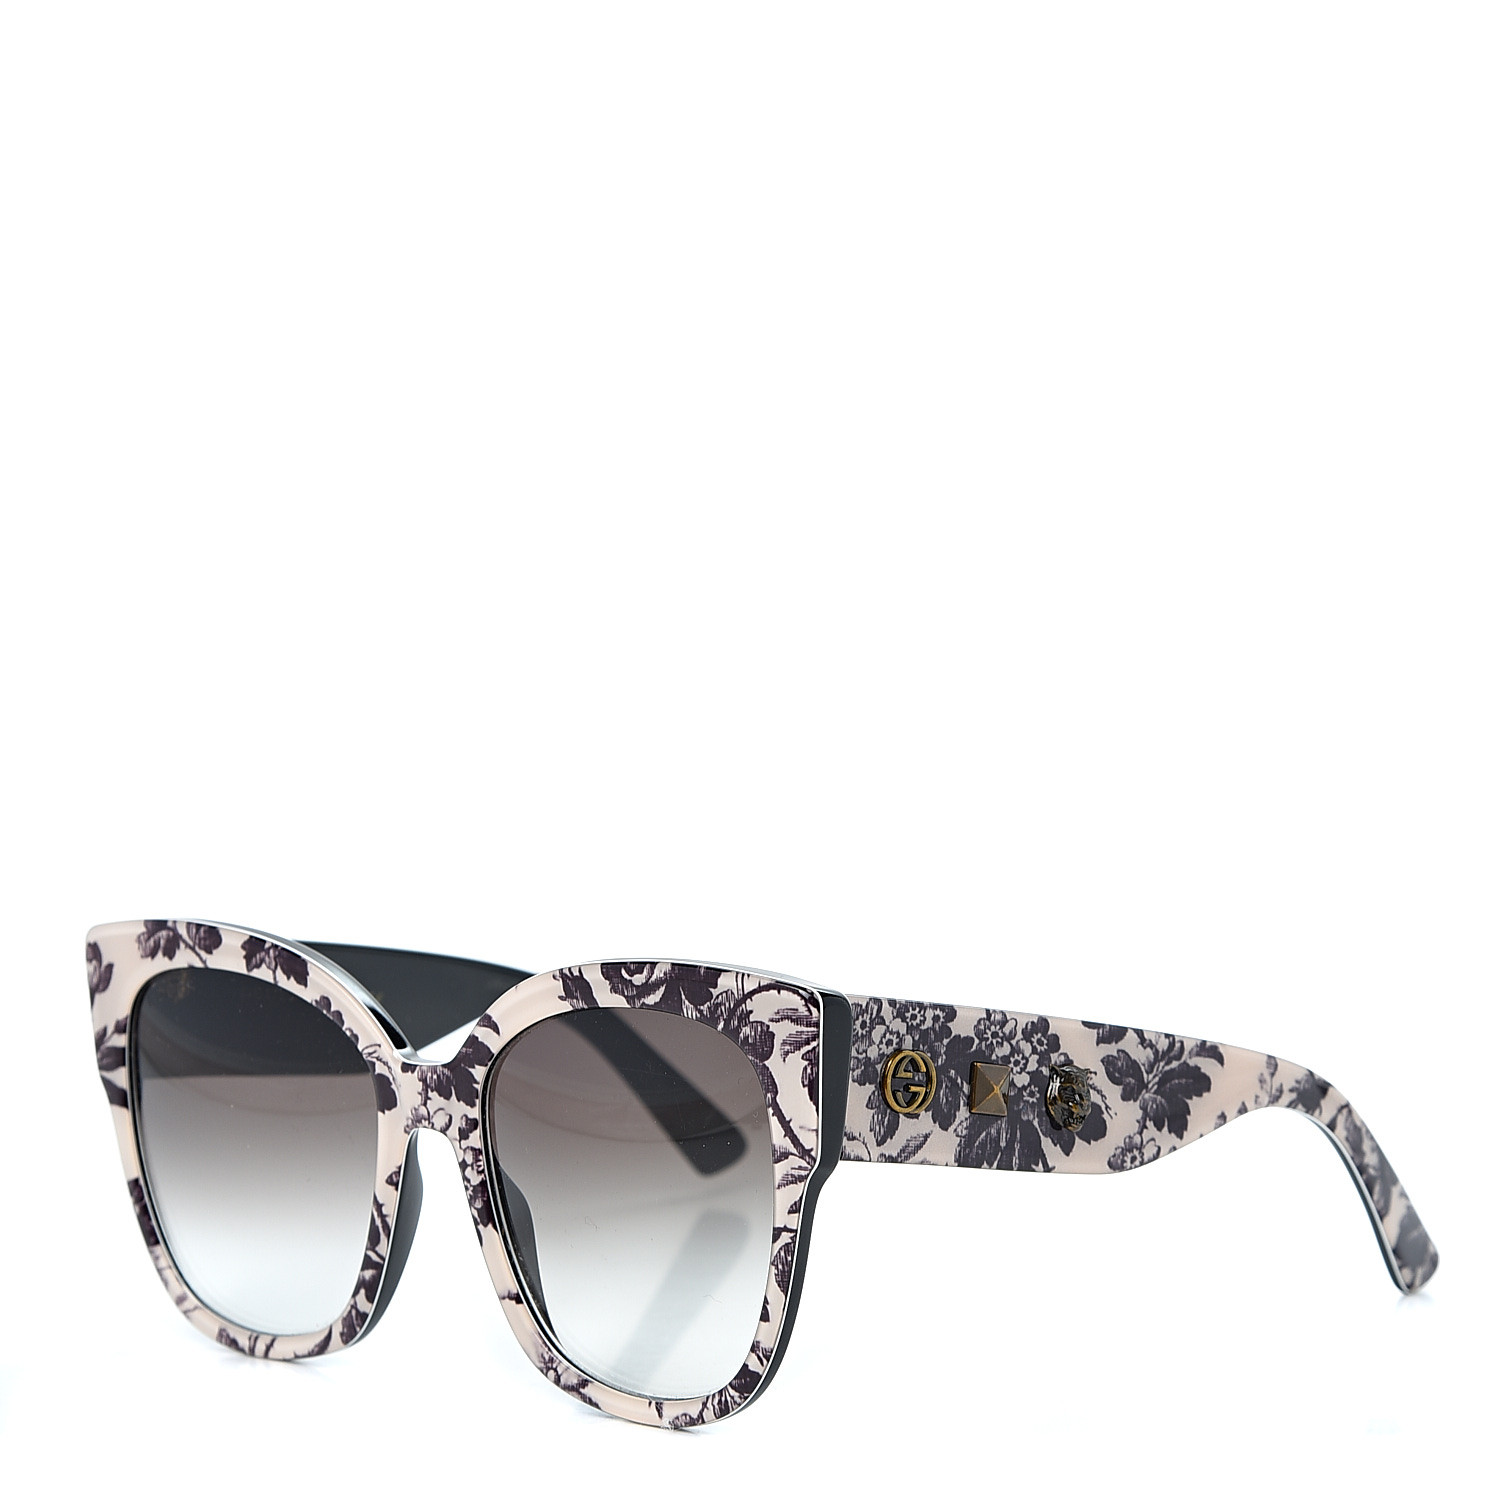 gucci gg0059s sunglasses